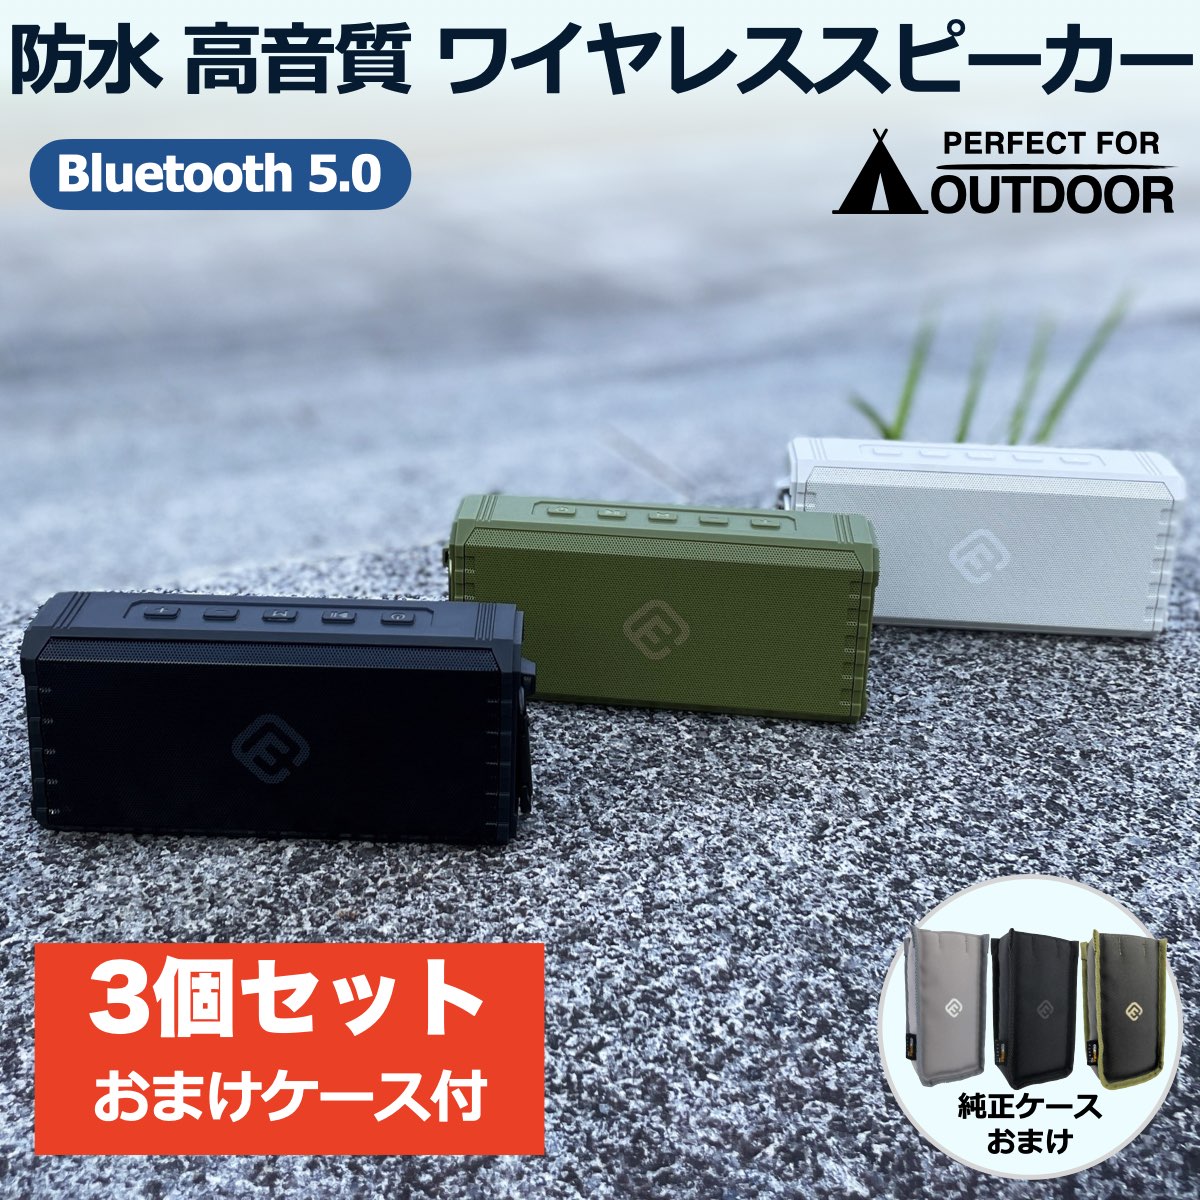 3個セット Bluetoothスピーカー 防水 高音質 大音量 SD ブルートゥース